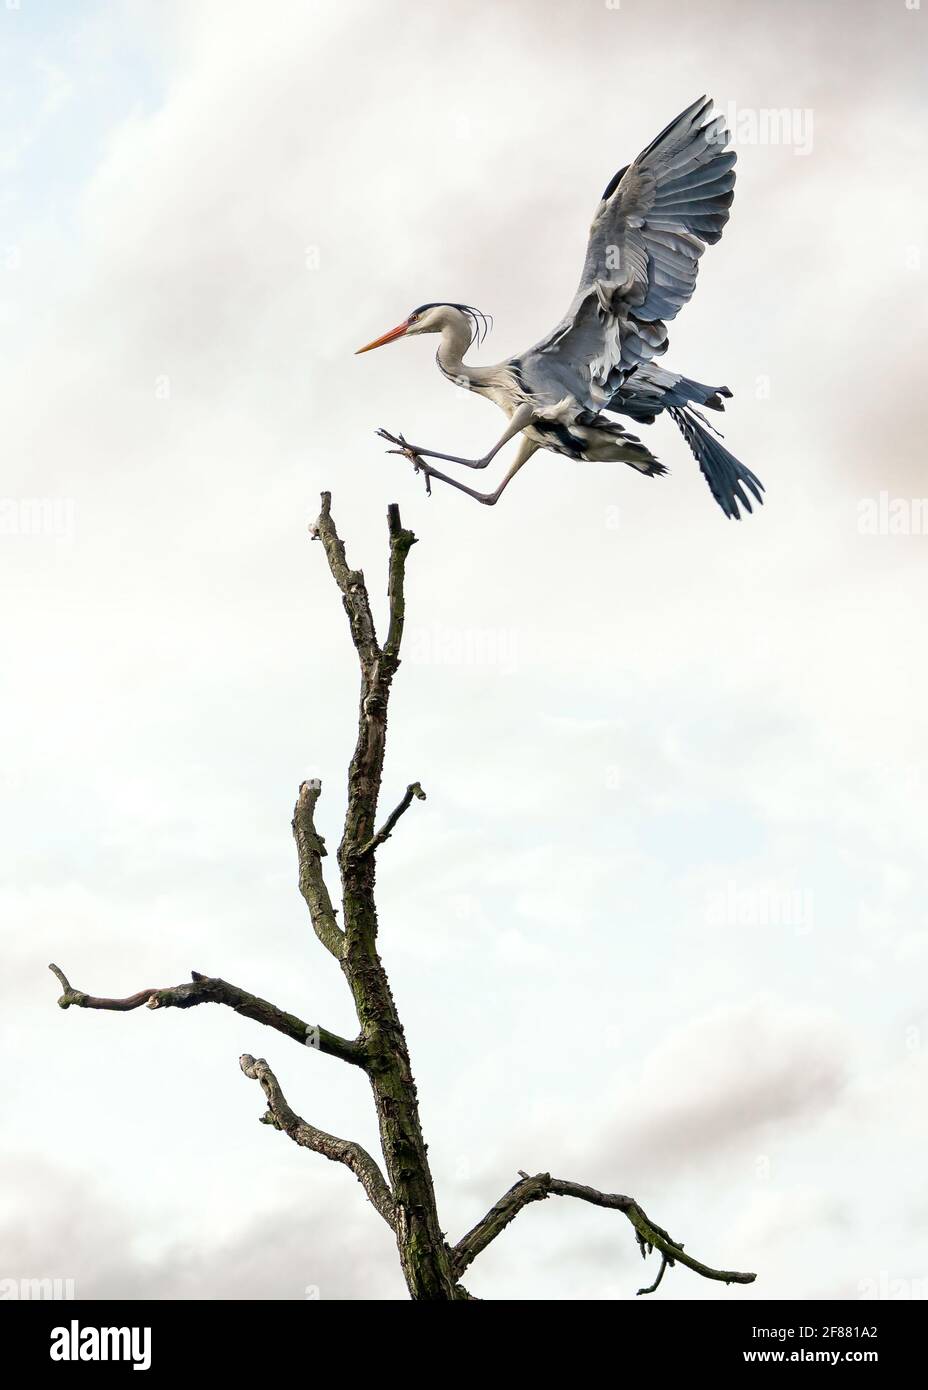 Bellissimo airone blu selvaggio grande uccello alato che scivola nell'atterraggio con grazia sulla cima dell'albero con cielo di tramonto dietro. Ali di cicogna massicce gambe lunghe collo Foto Stock